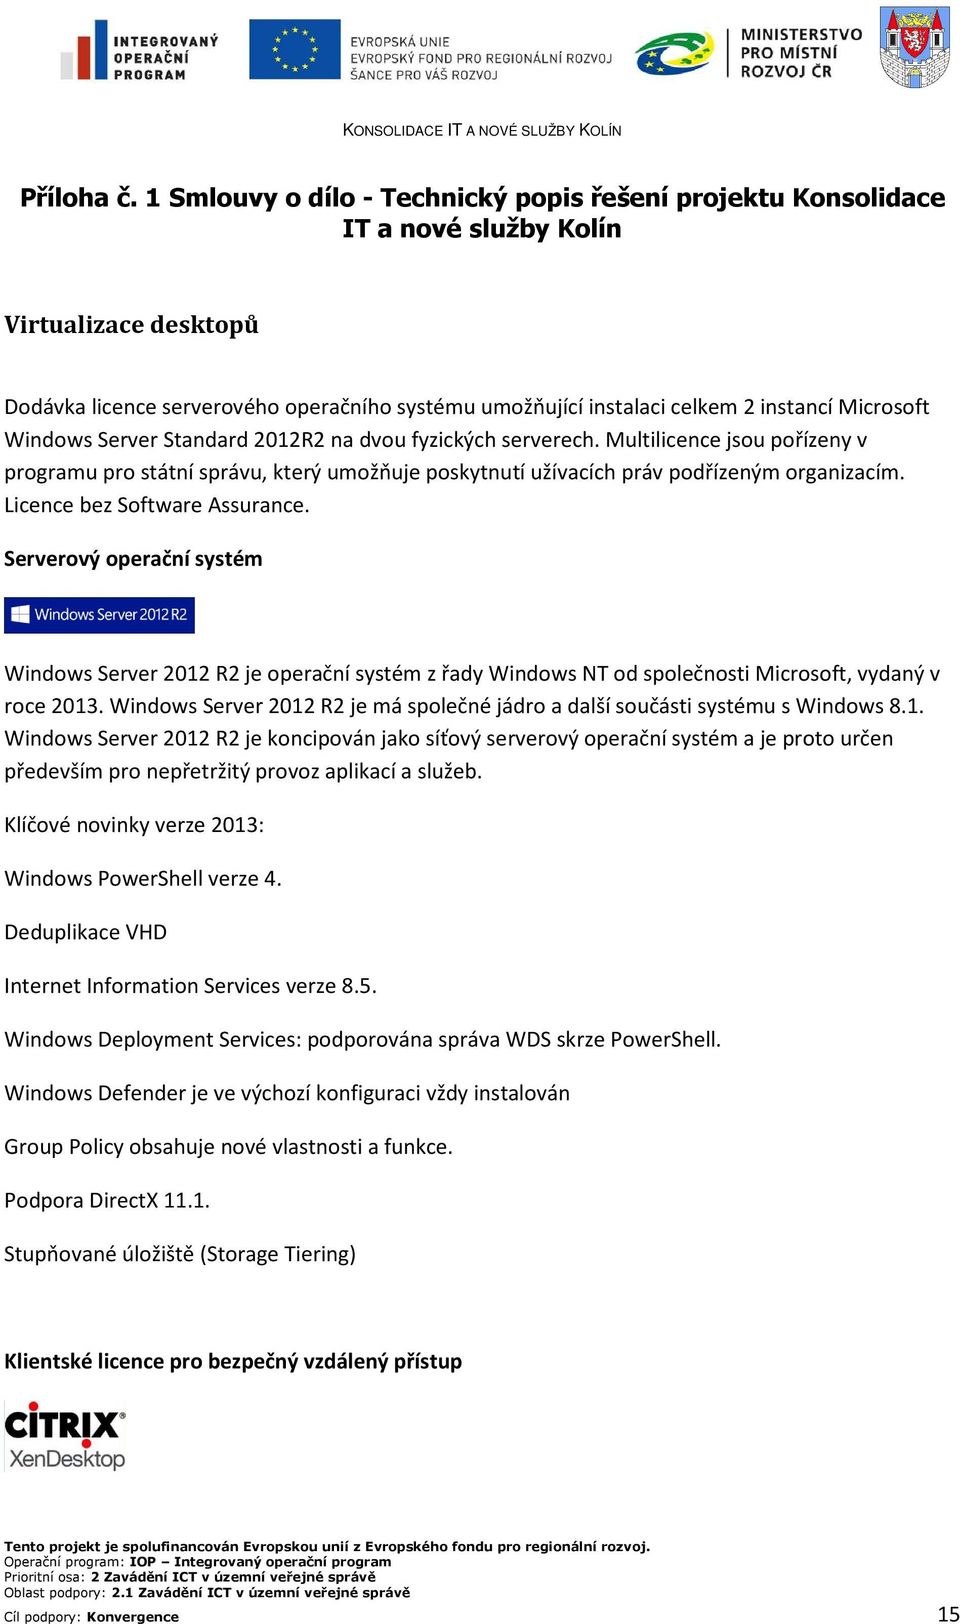 Microsoft Windows Server Standard 2012R2 na dvou fyzických serverech. Multilicence jsou pořízeny v programu pro státní správu, který umožňuje poskytnutí užívacích práv podřízeným organizacím.